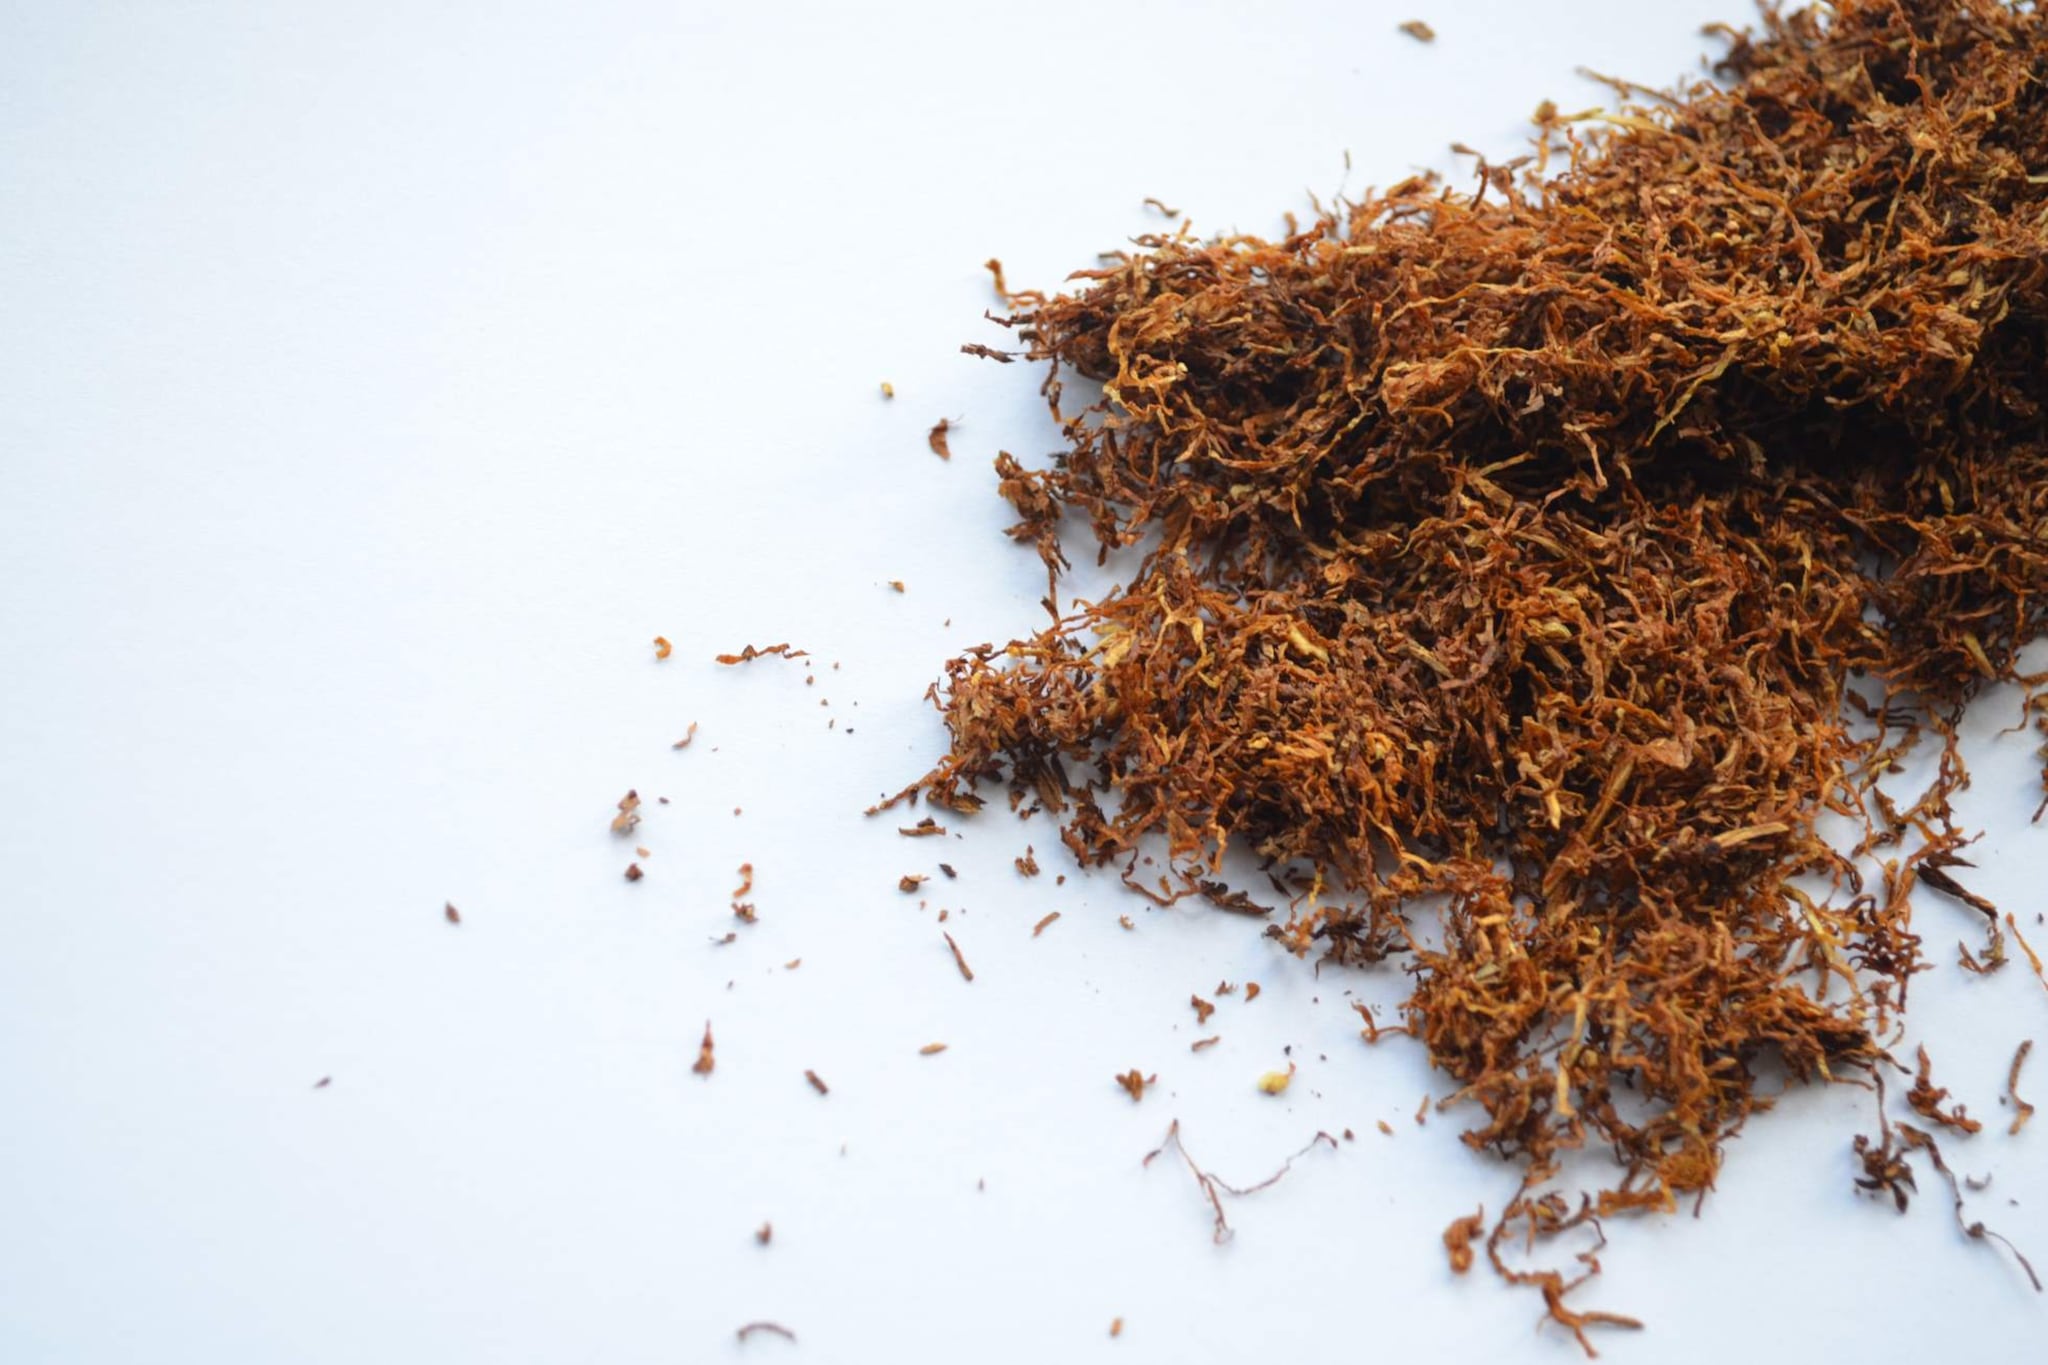 Druhy tabáku určeného k zahřívání a rozdíly mezi nimi